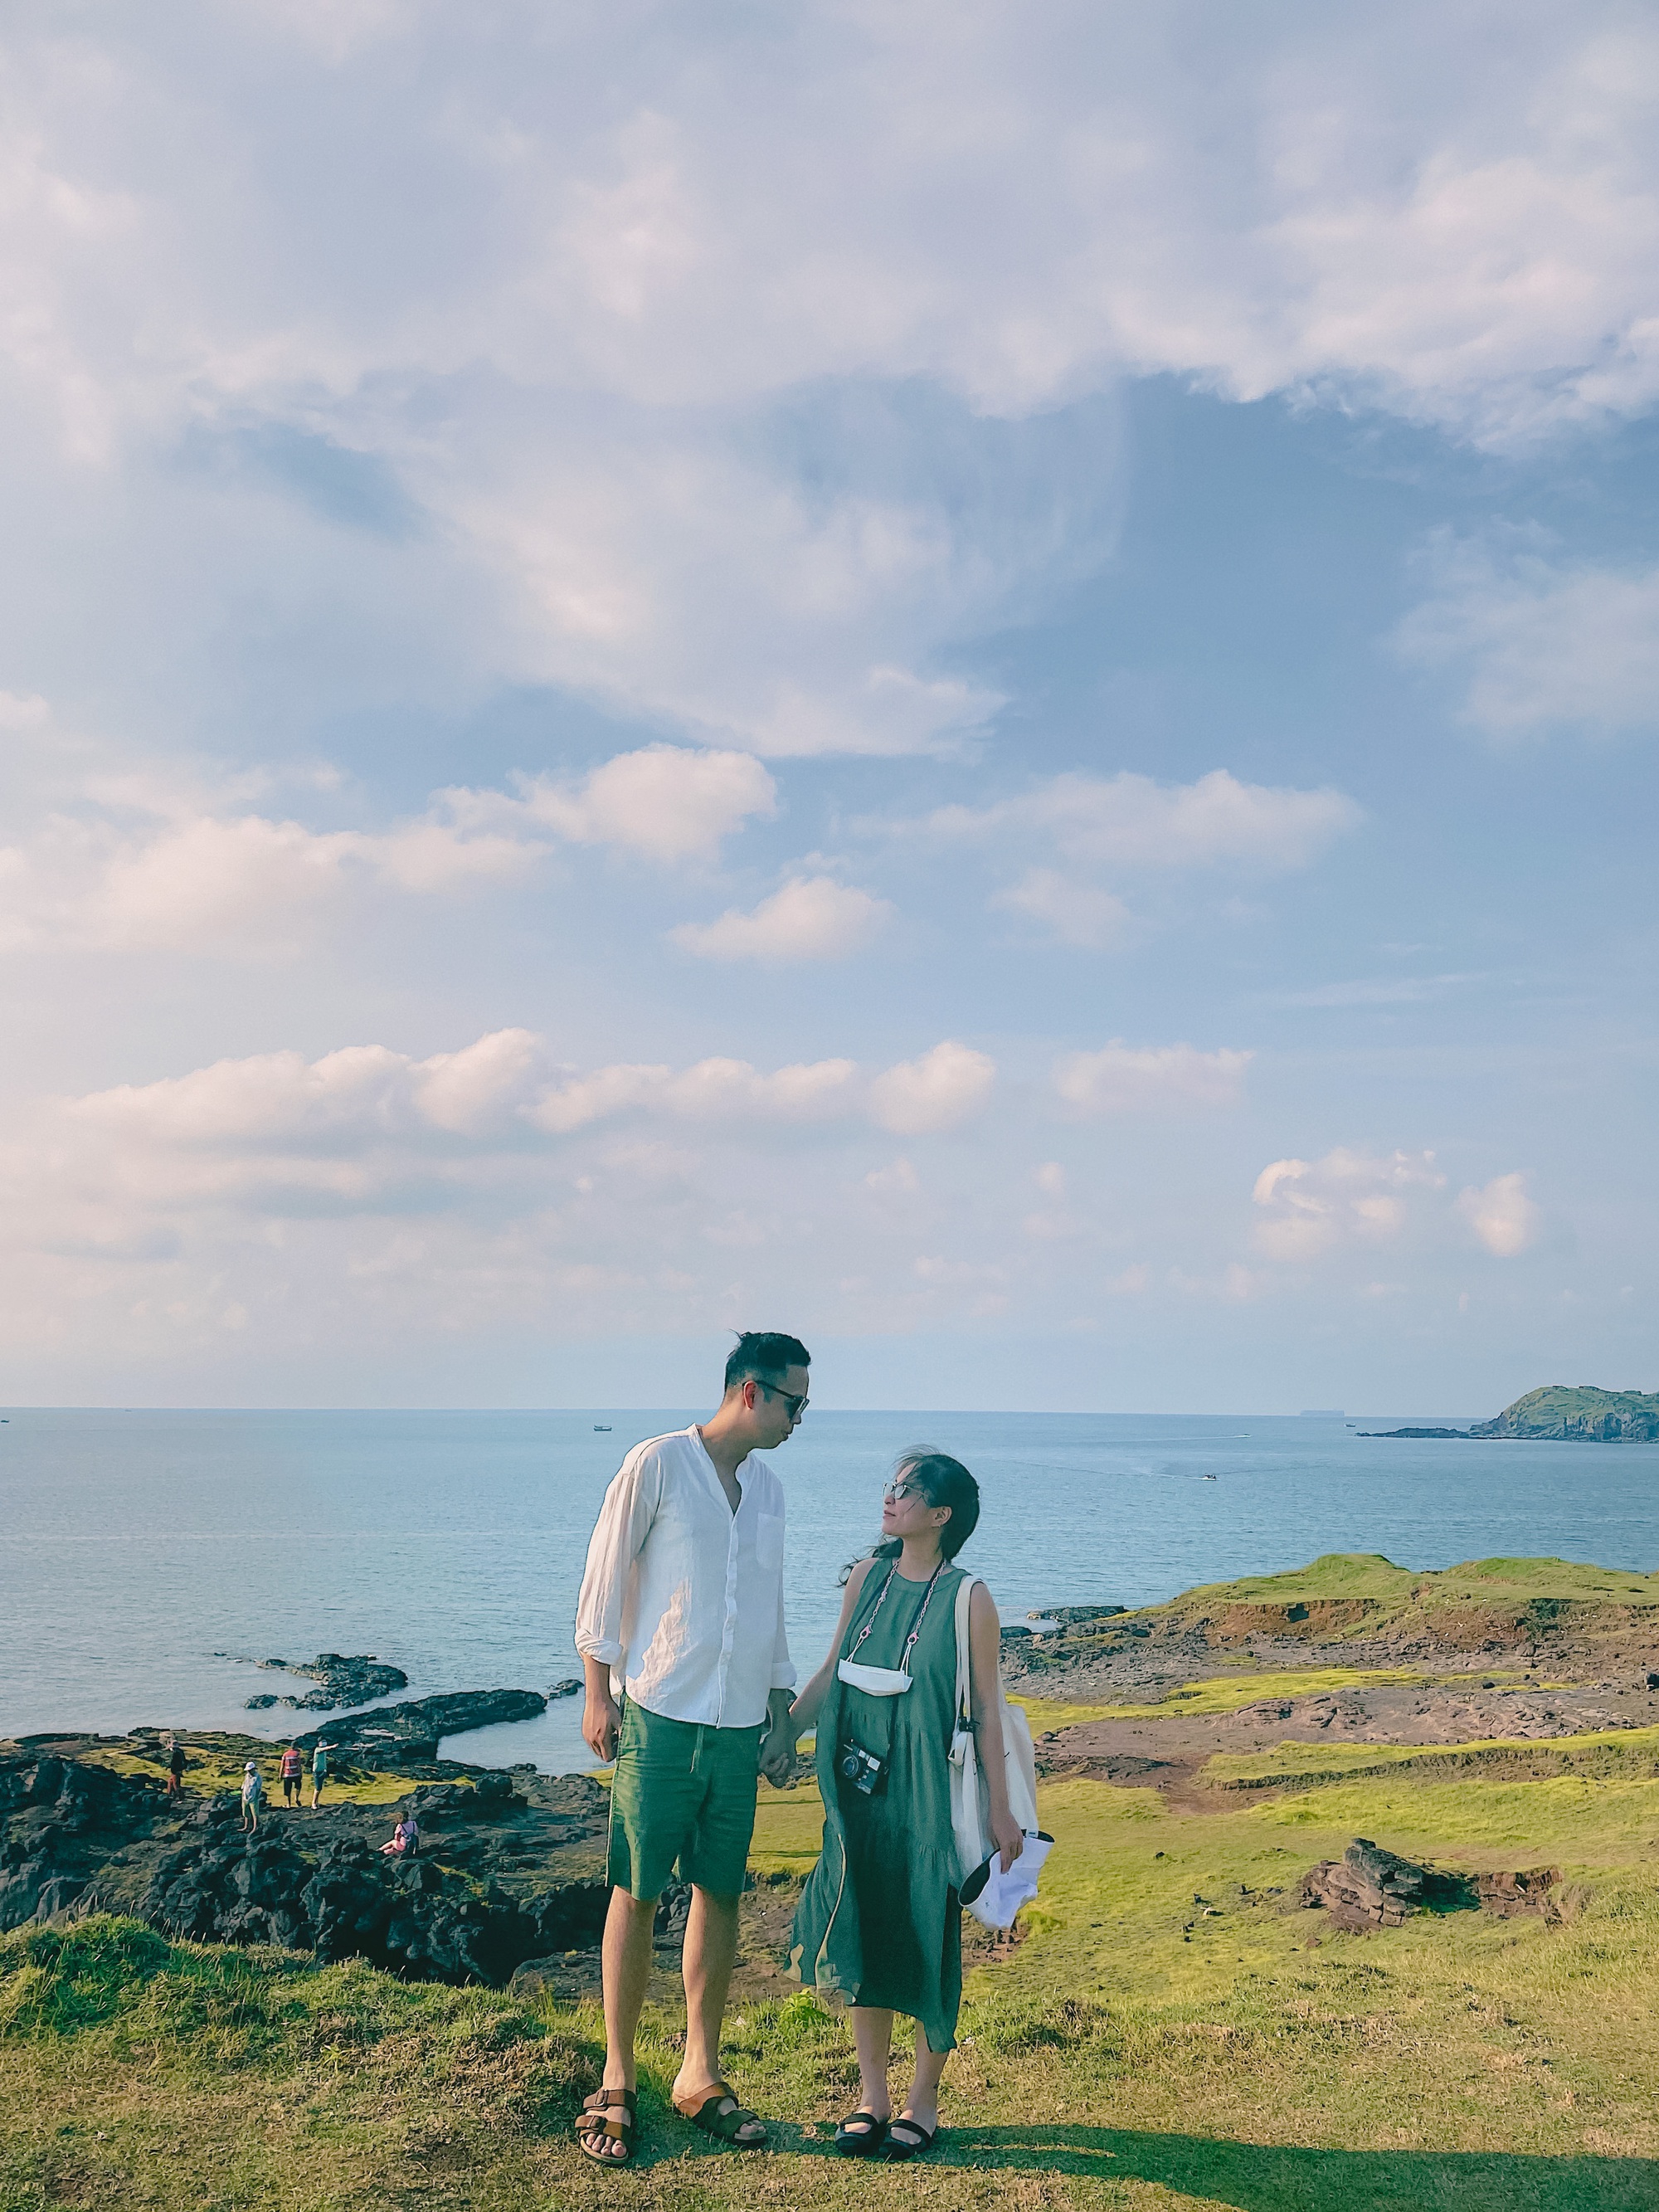 (mai) Lần đầu đi đảo Phú Quý sau dịch, cô gái Hà Nội được cầu hôn đúng khoảnh khắc hoàng hôn ở vịnh Triều Dương - Ảnh 7.